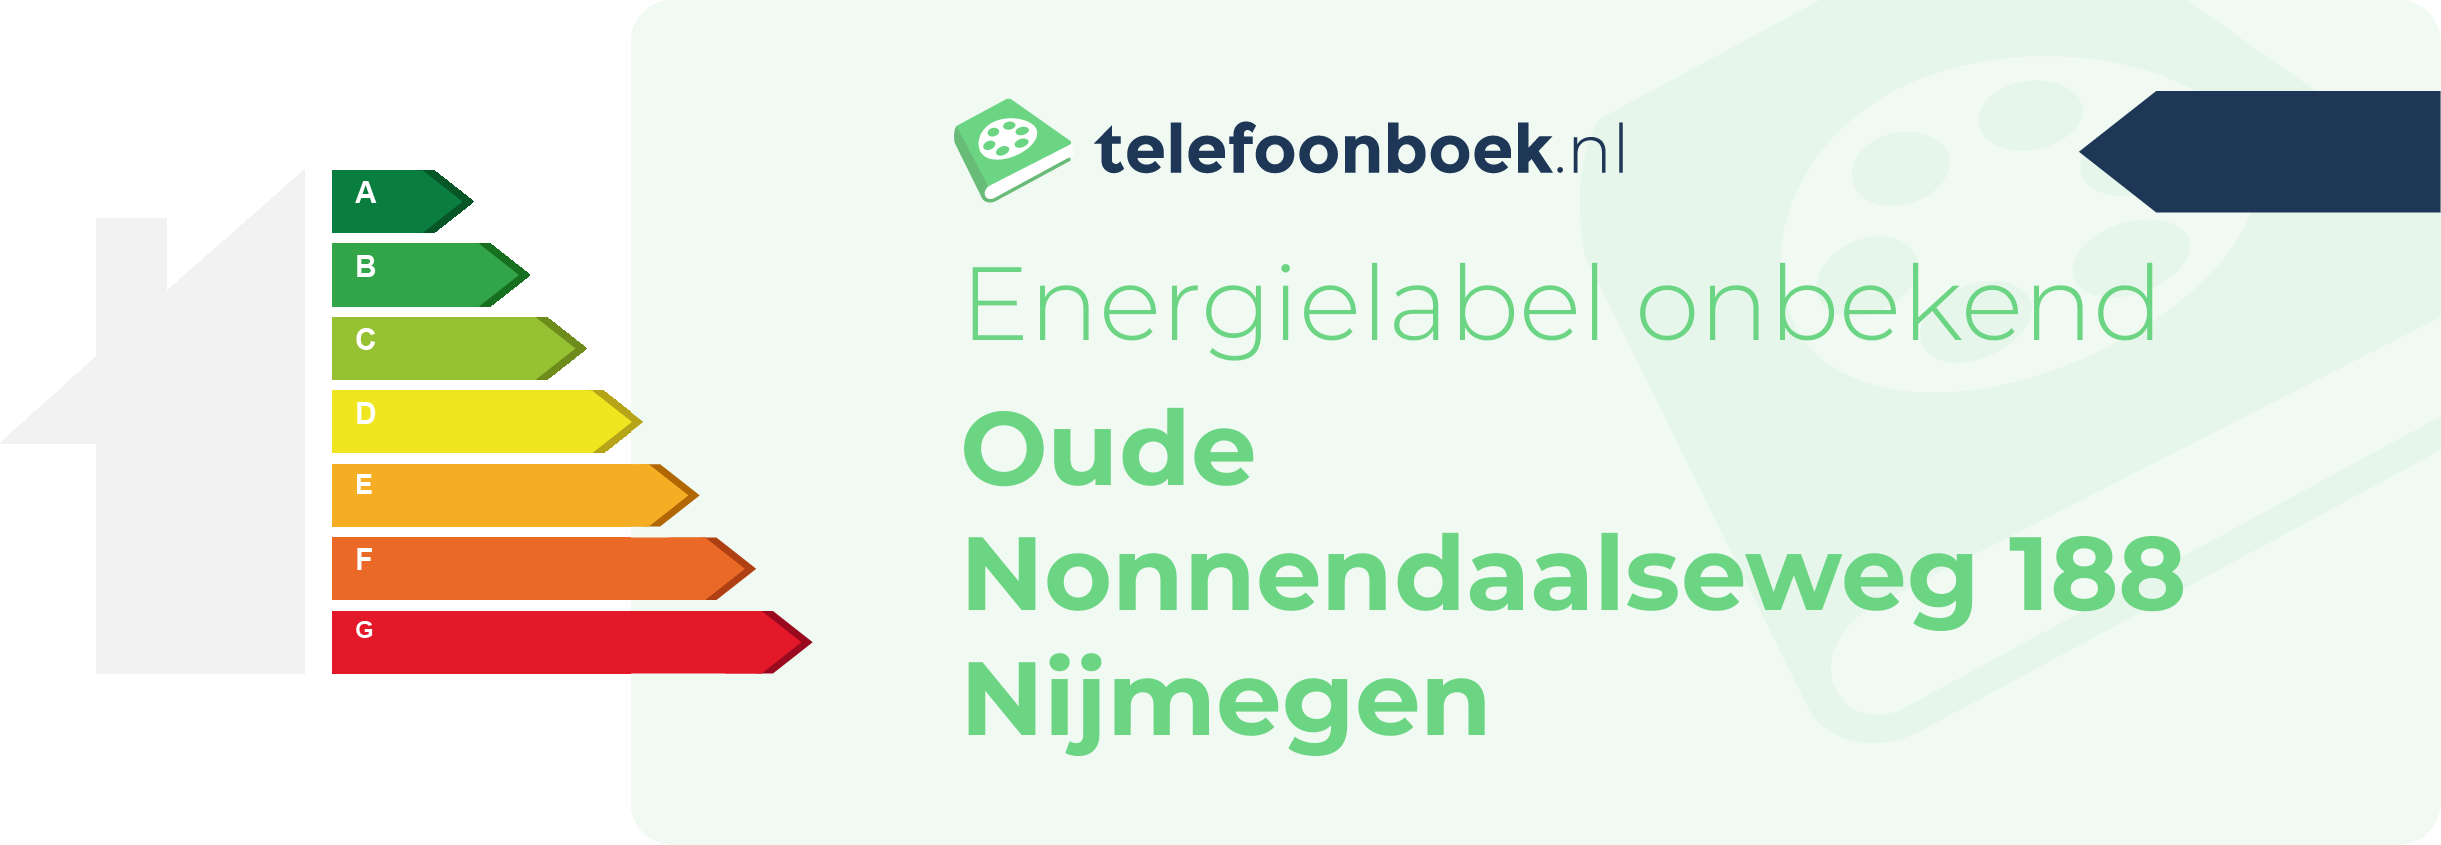 Energielabel Oude Nonnendaalseweg 188 Nijmegen